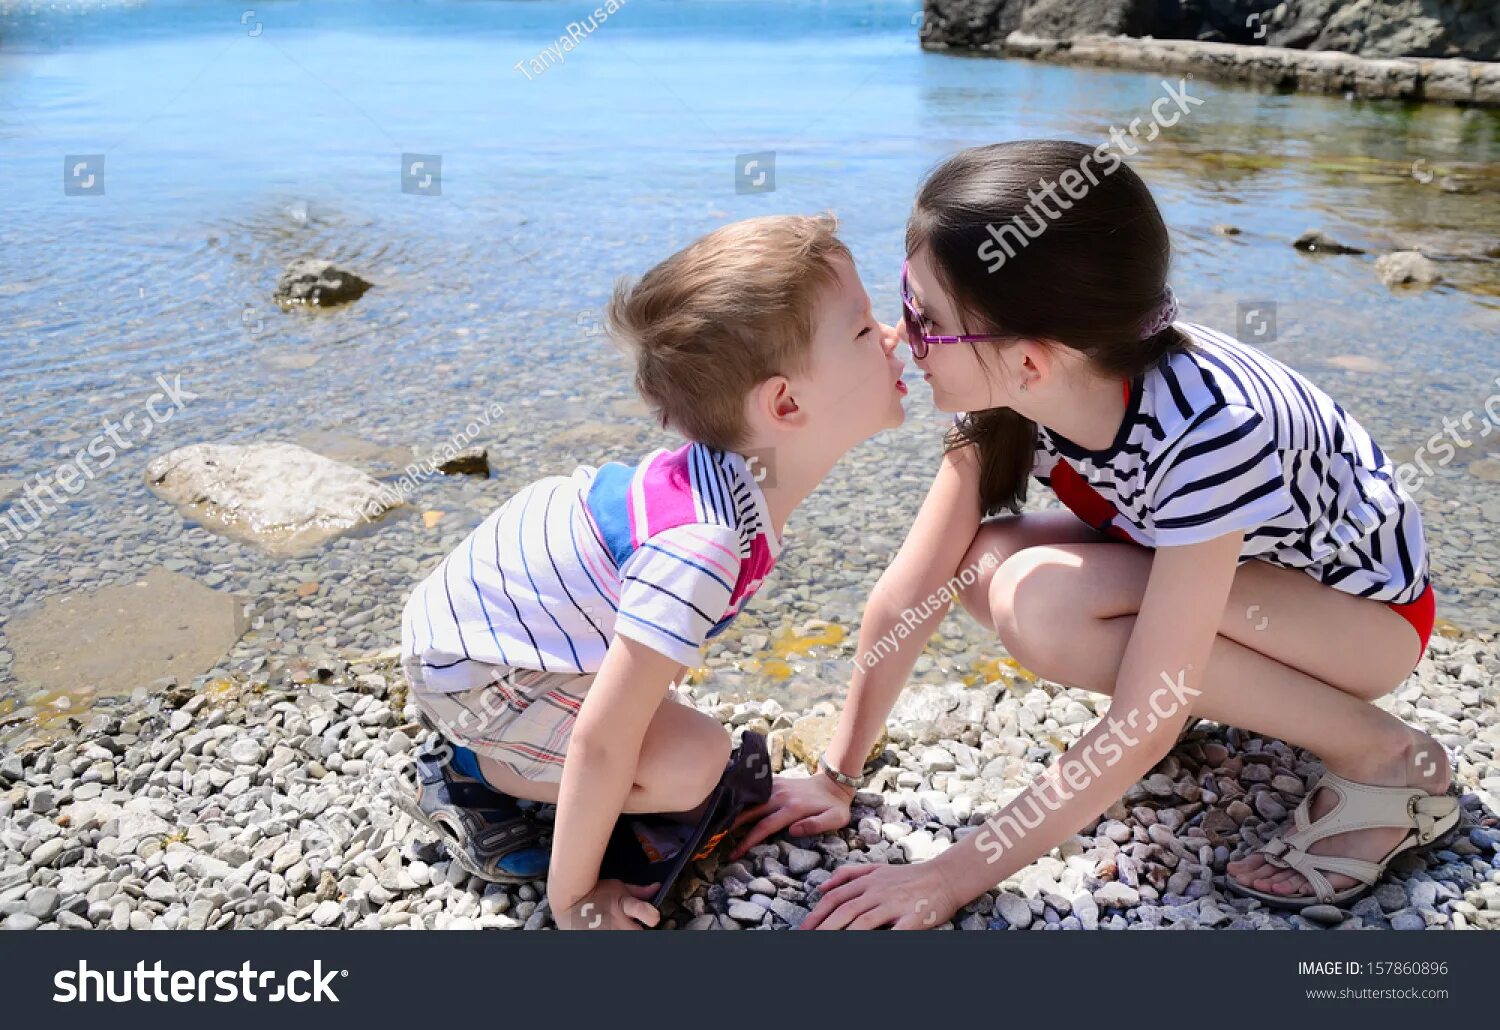 Сестрички на пляжу лет 10. Маленький мальчик и девочка занимаются. Брат и сестра целуются. Поцелуй в 10 лет. Брат лижет маму